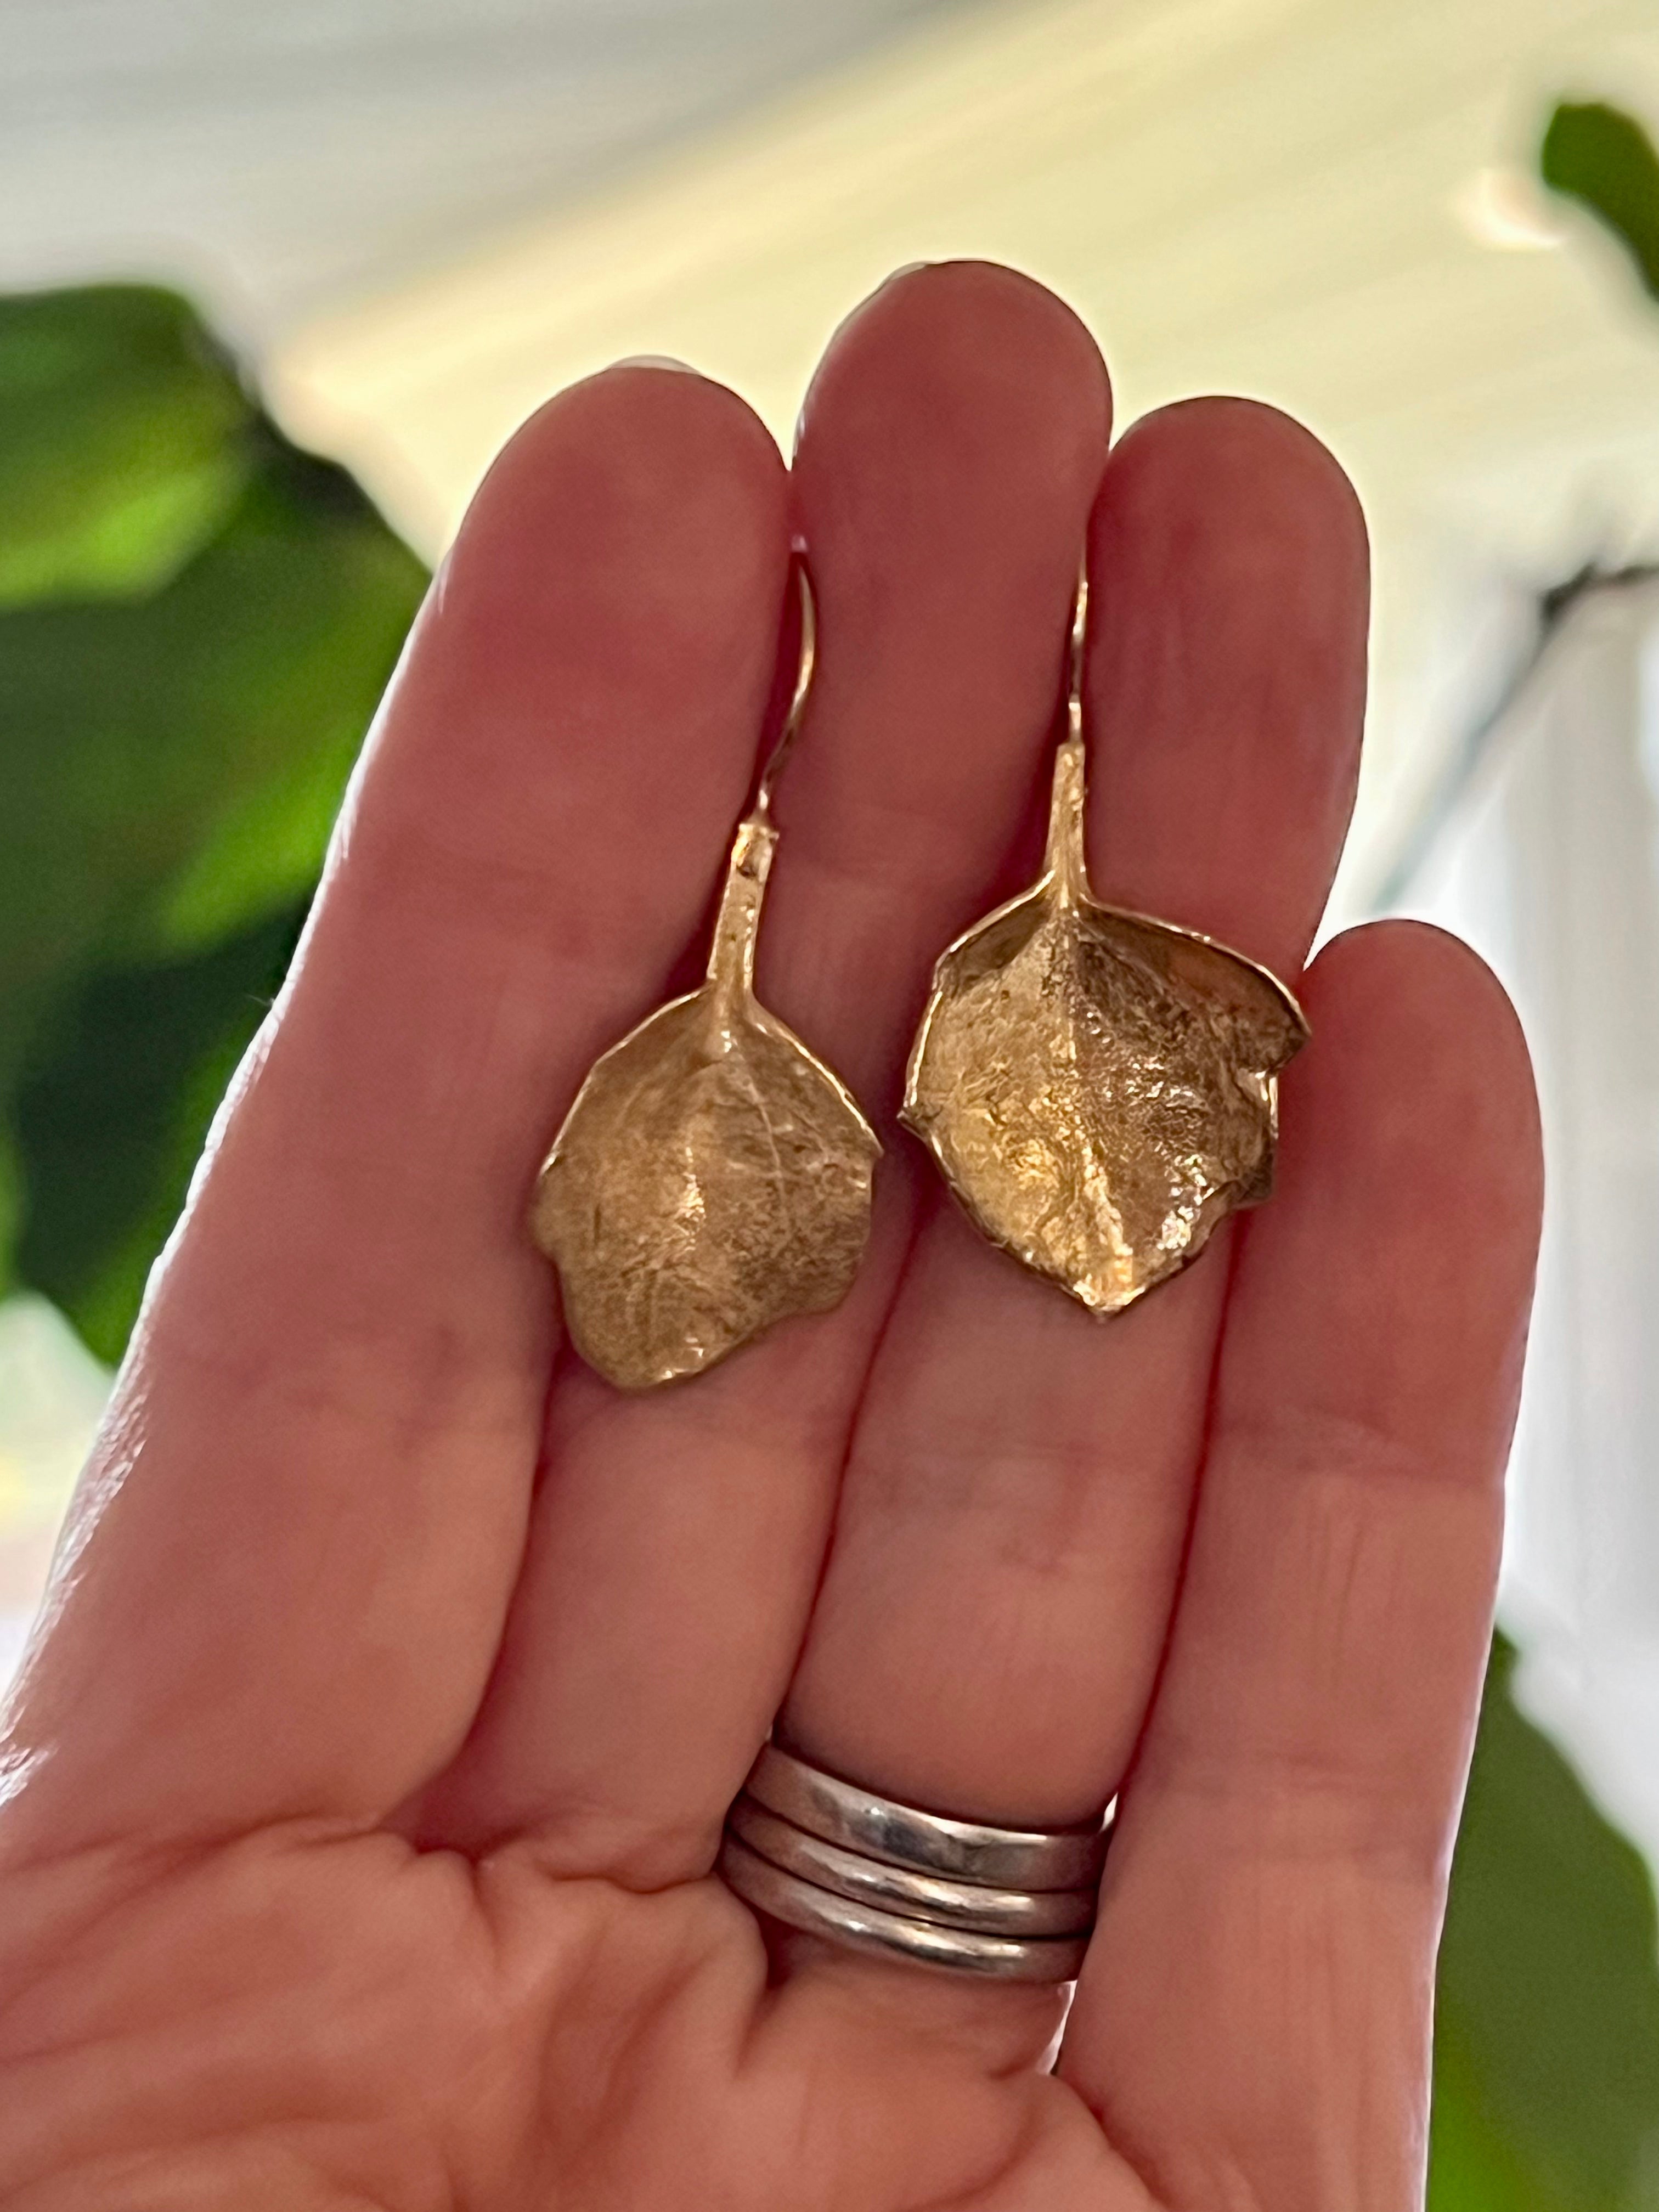 Botanical earrings - in the garden vine leaf - gold